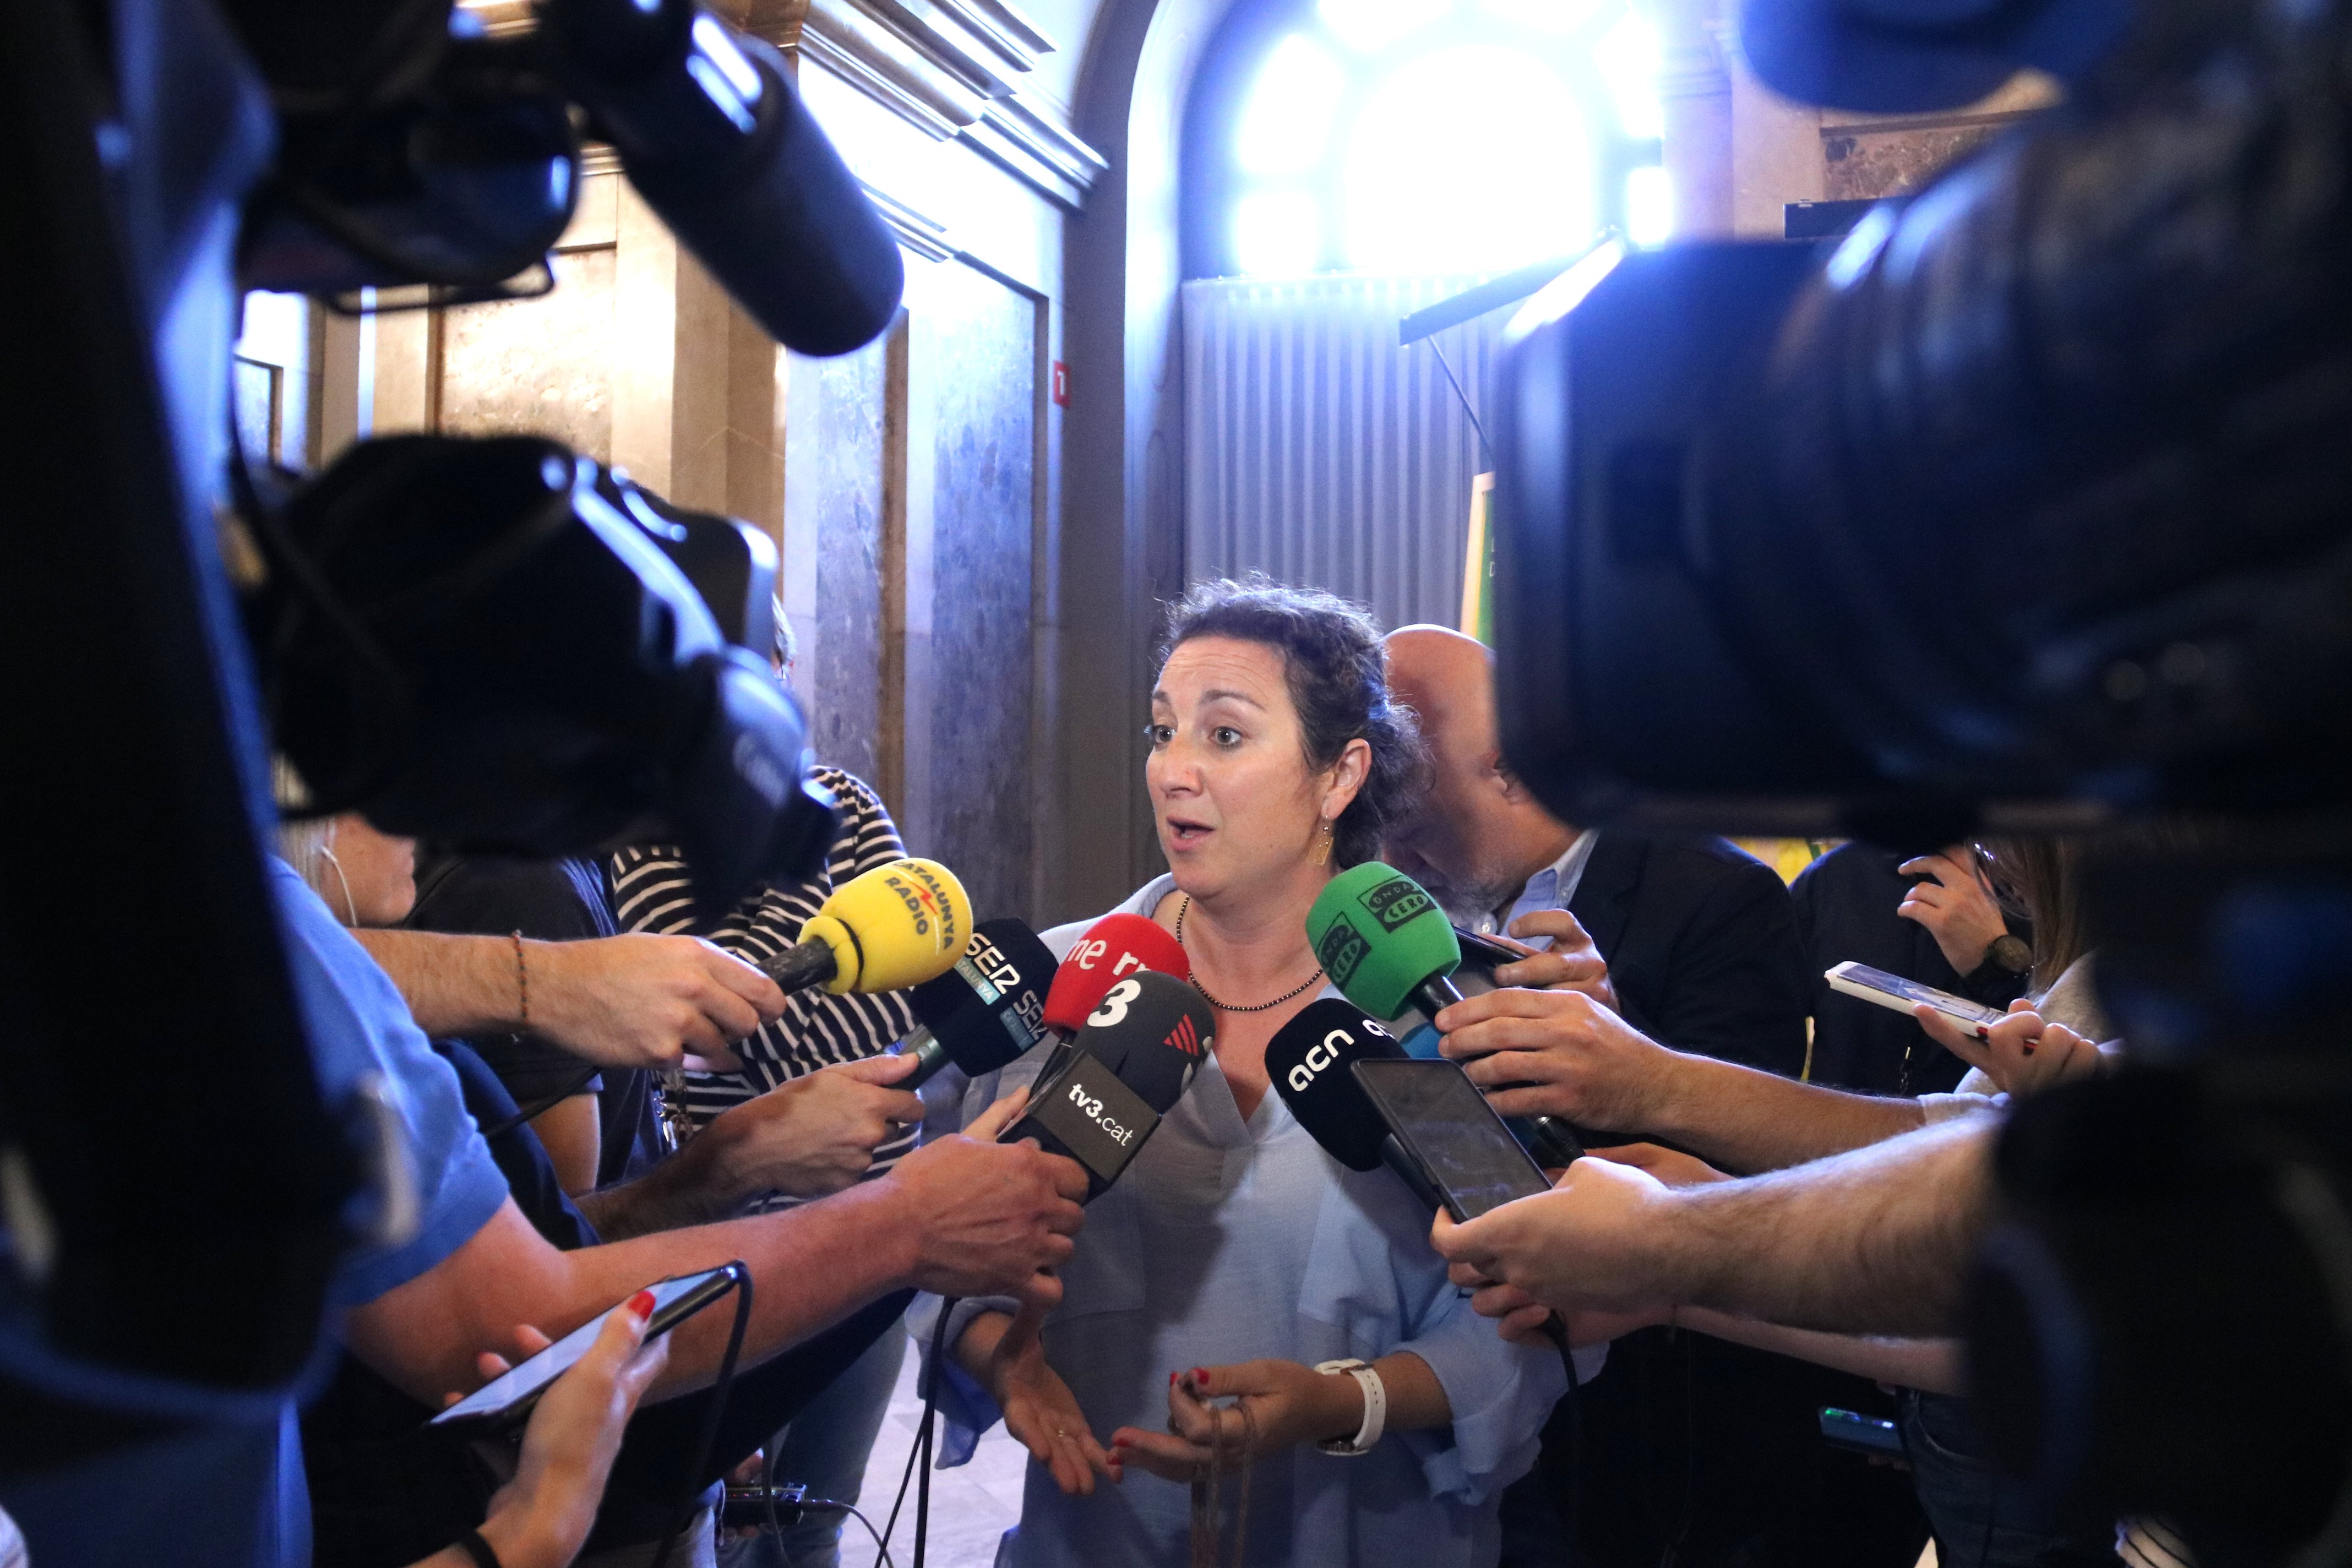 El PSC s'oposa a la decisió de la Mesa sobre Laura Borràs: "Accions dilatòries"